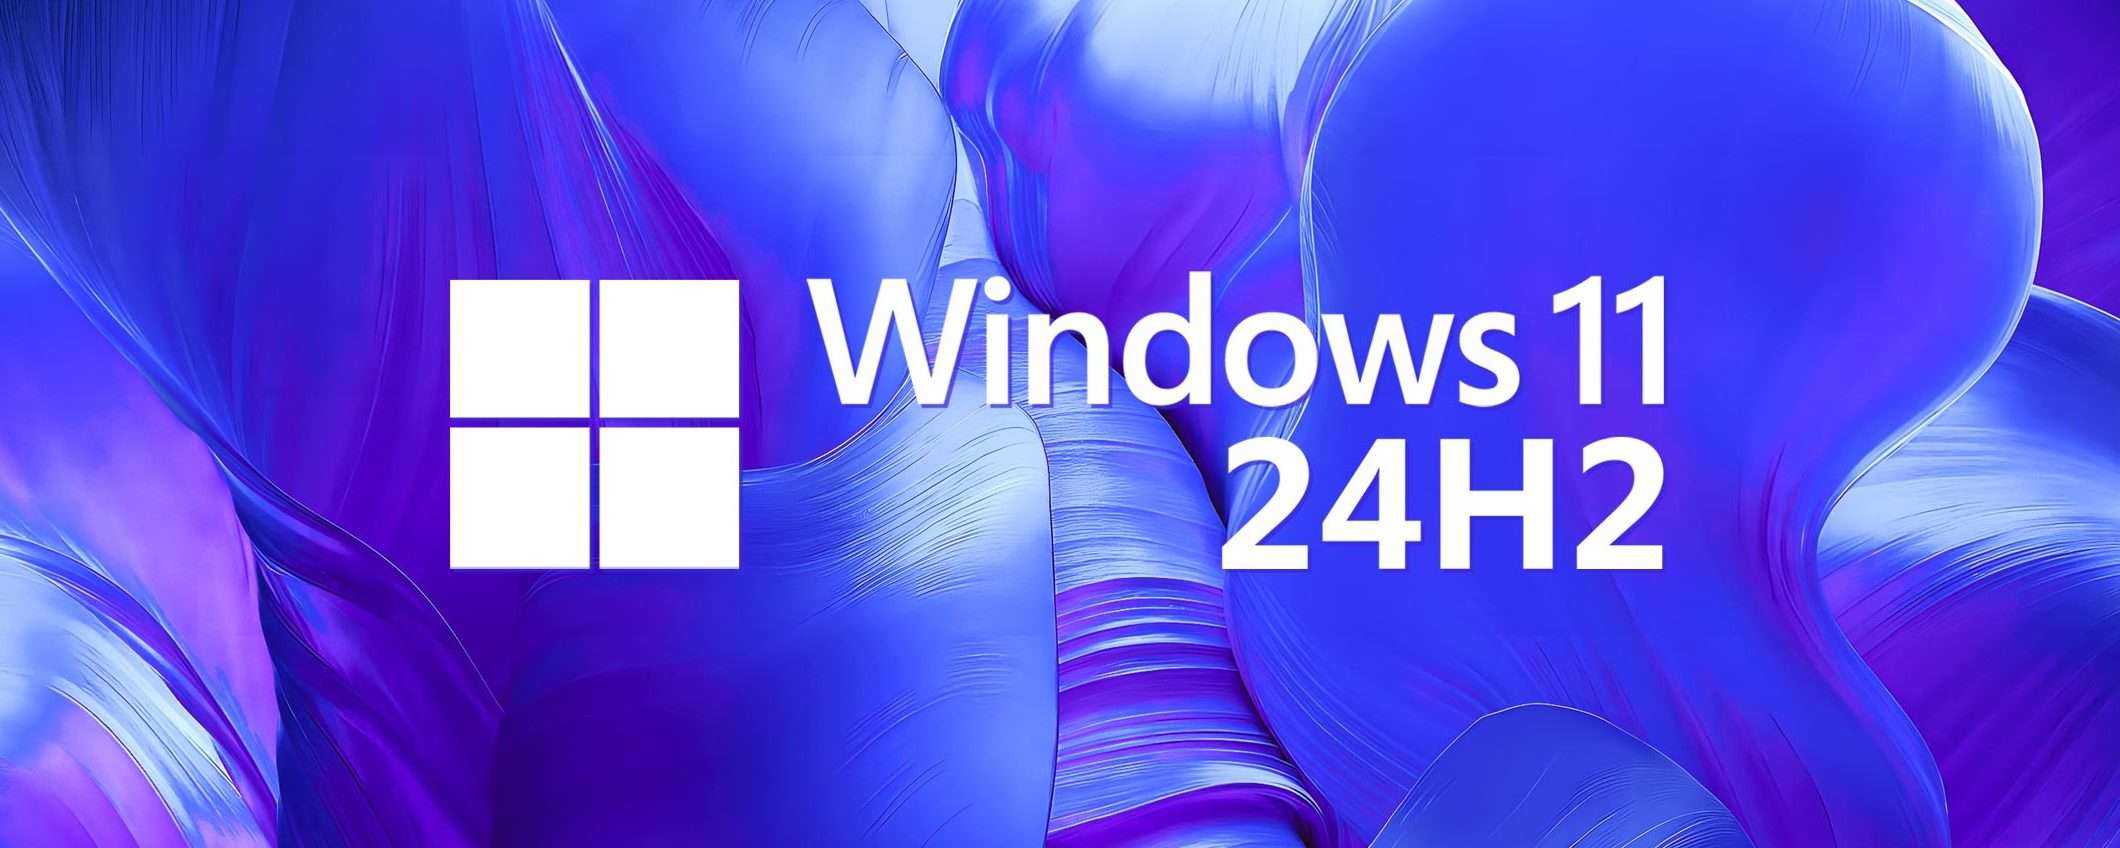 Windows 12 non arriverà nel 2024: toccherà a Windows 11 24H2